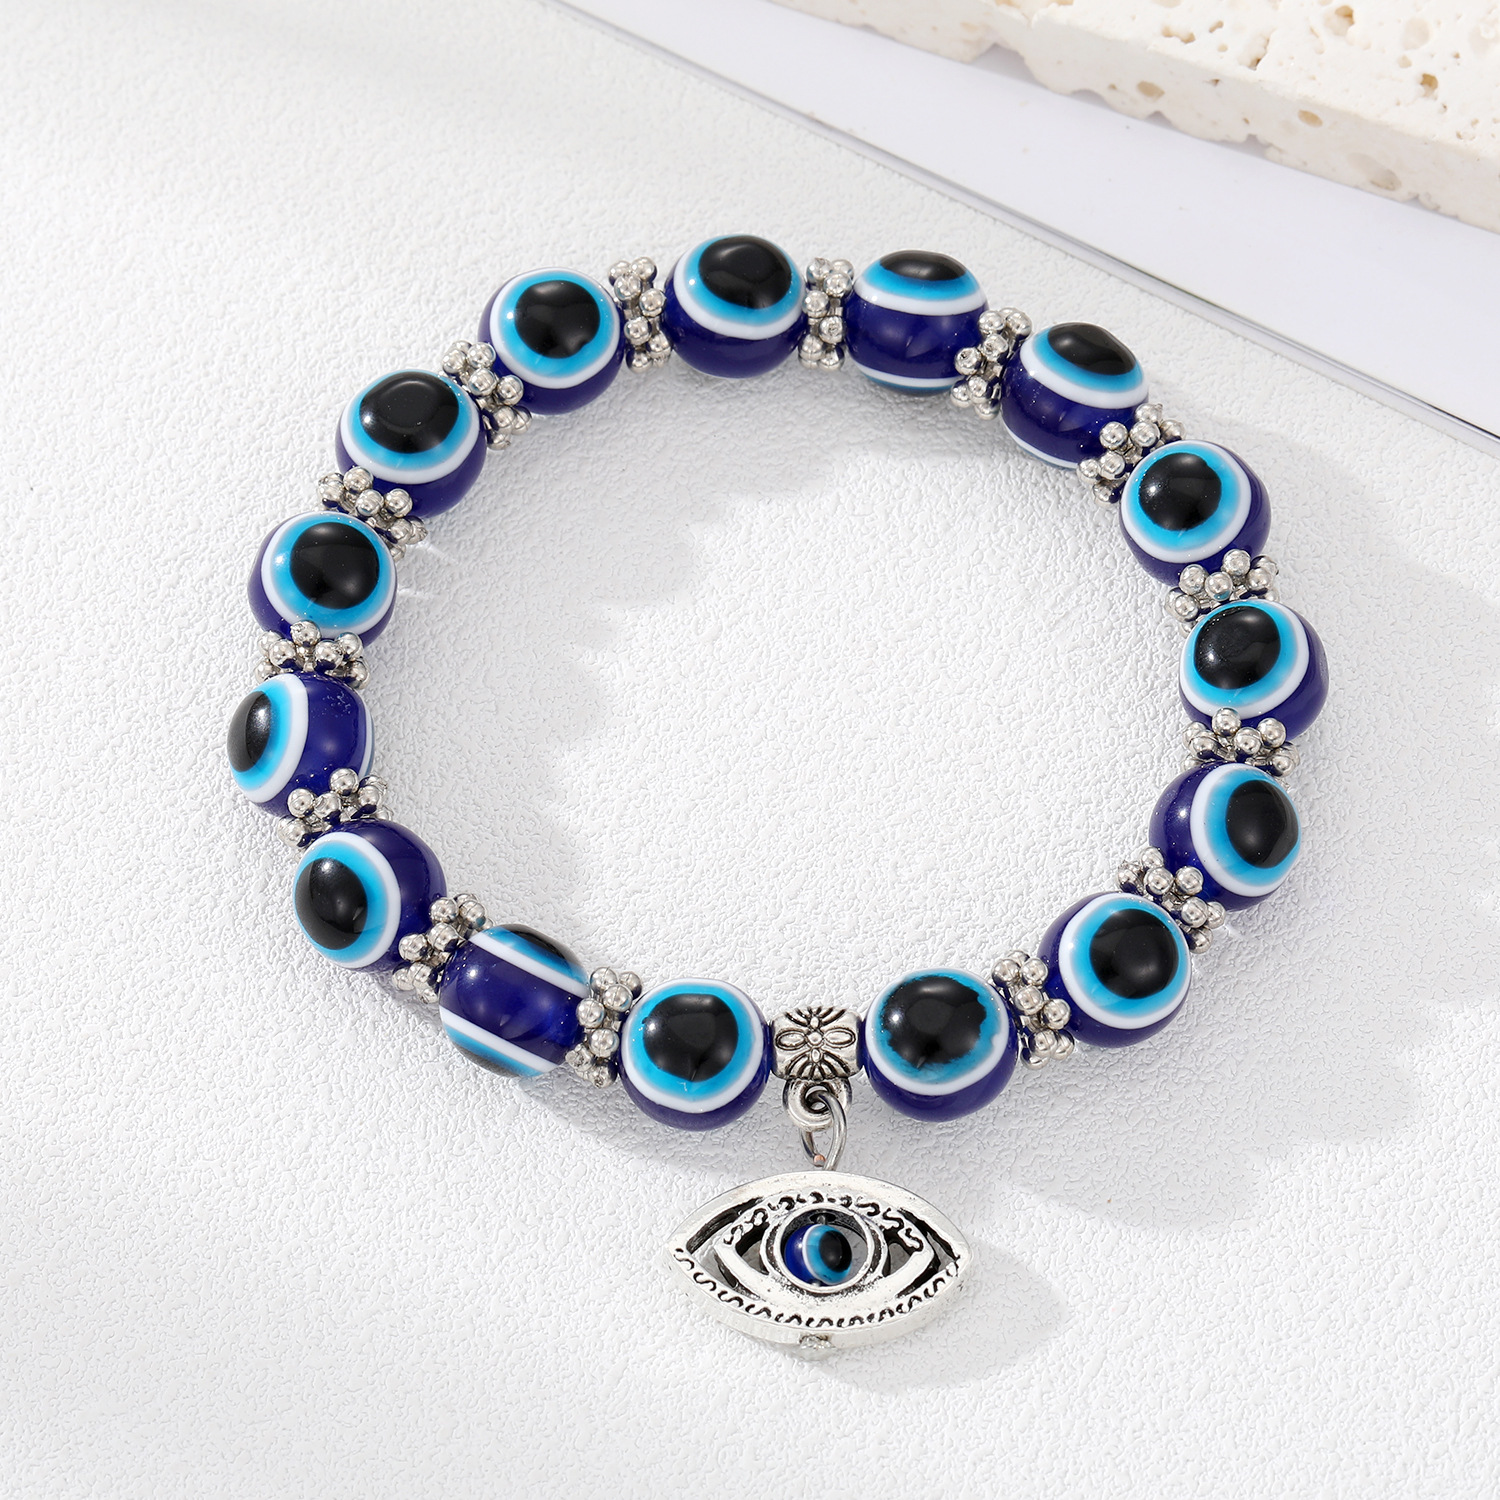 2:Blue eye bracelet with large beads